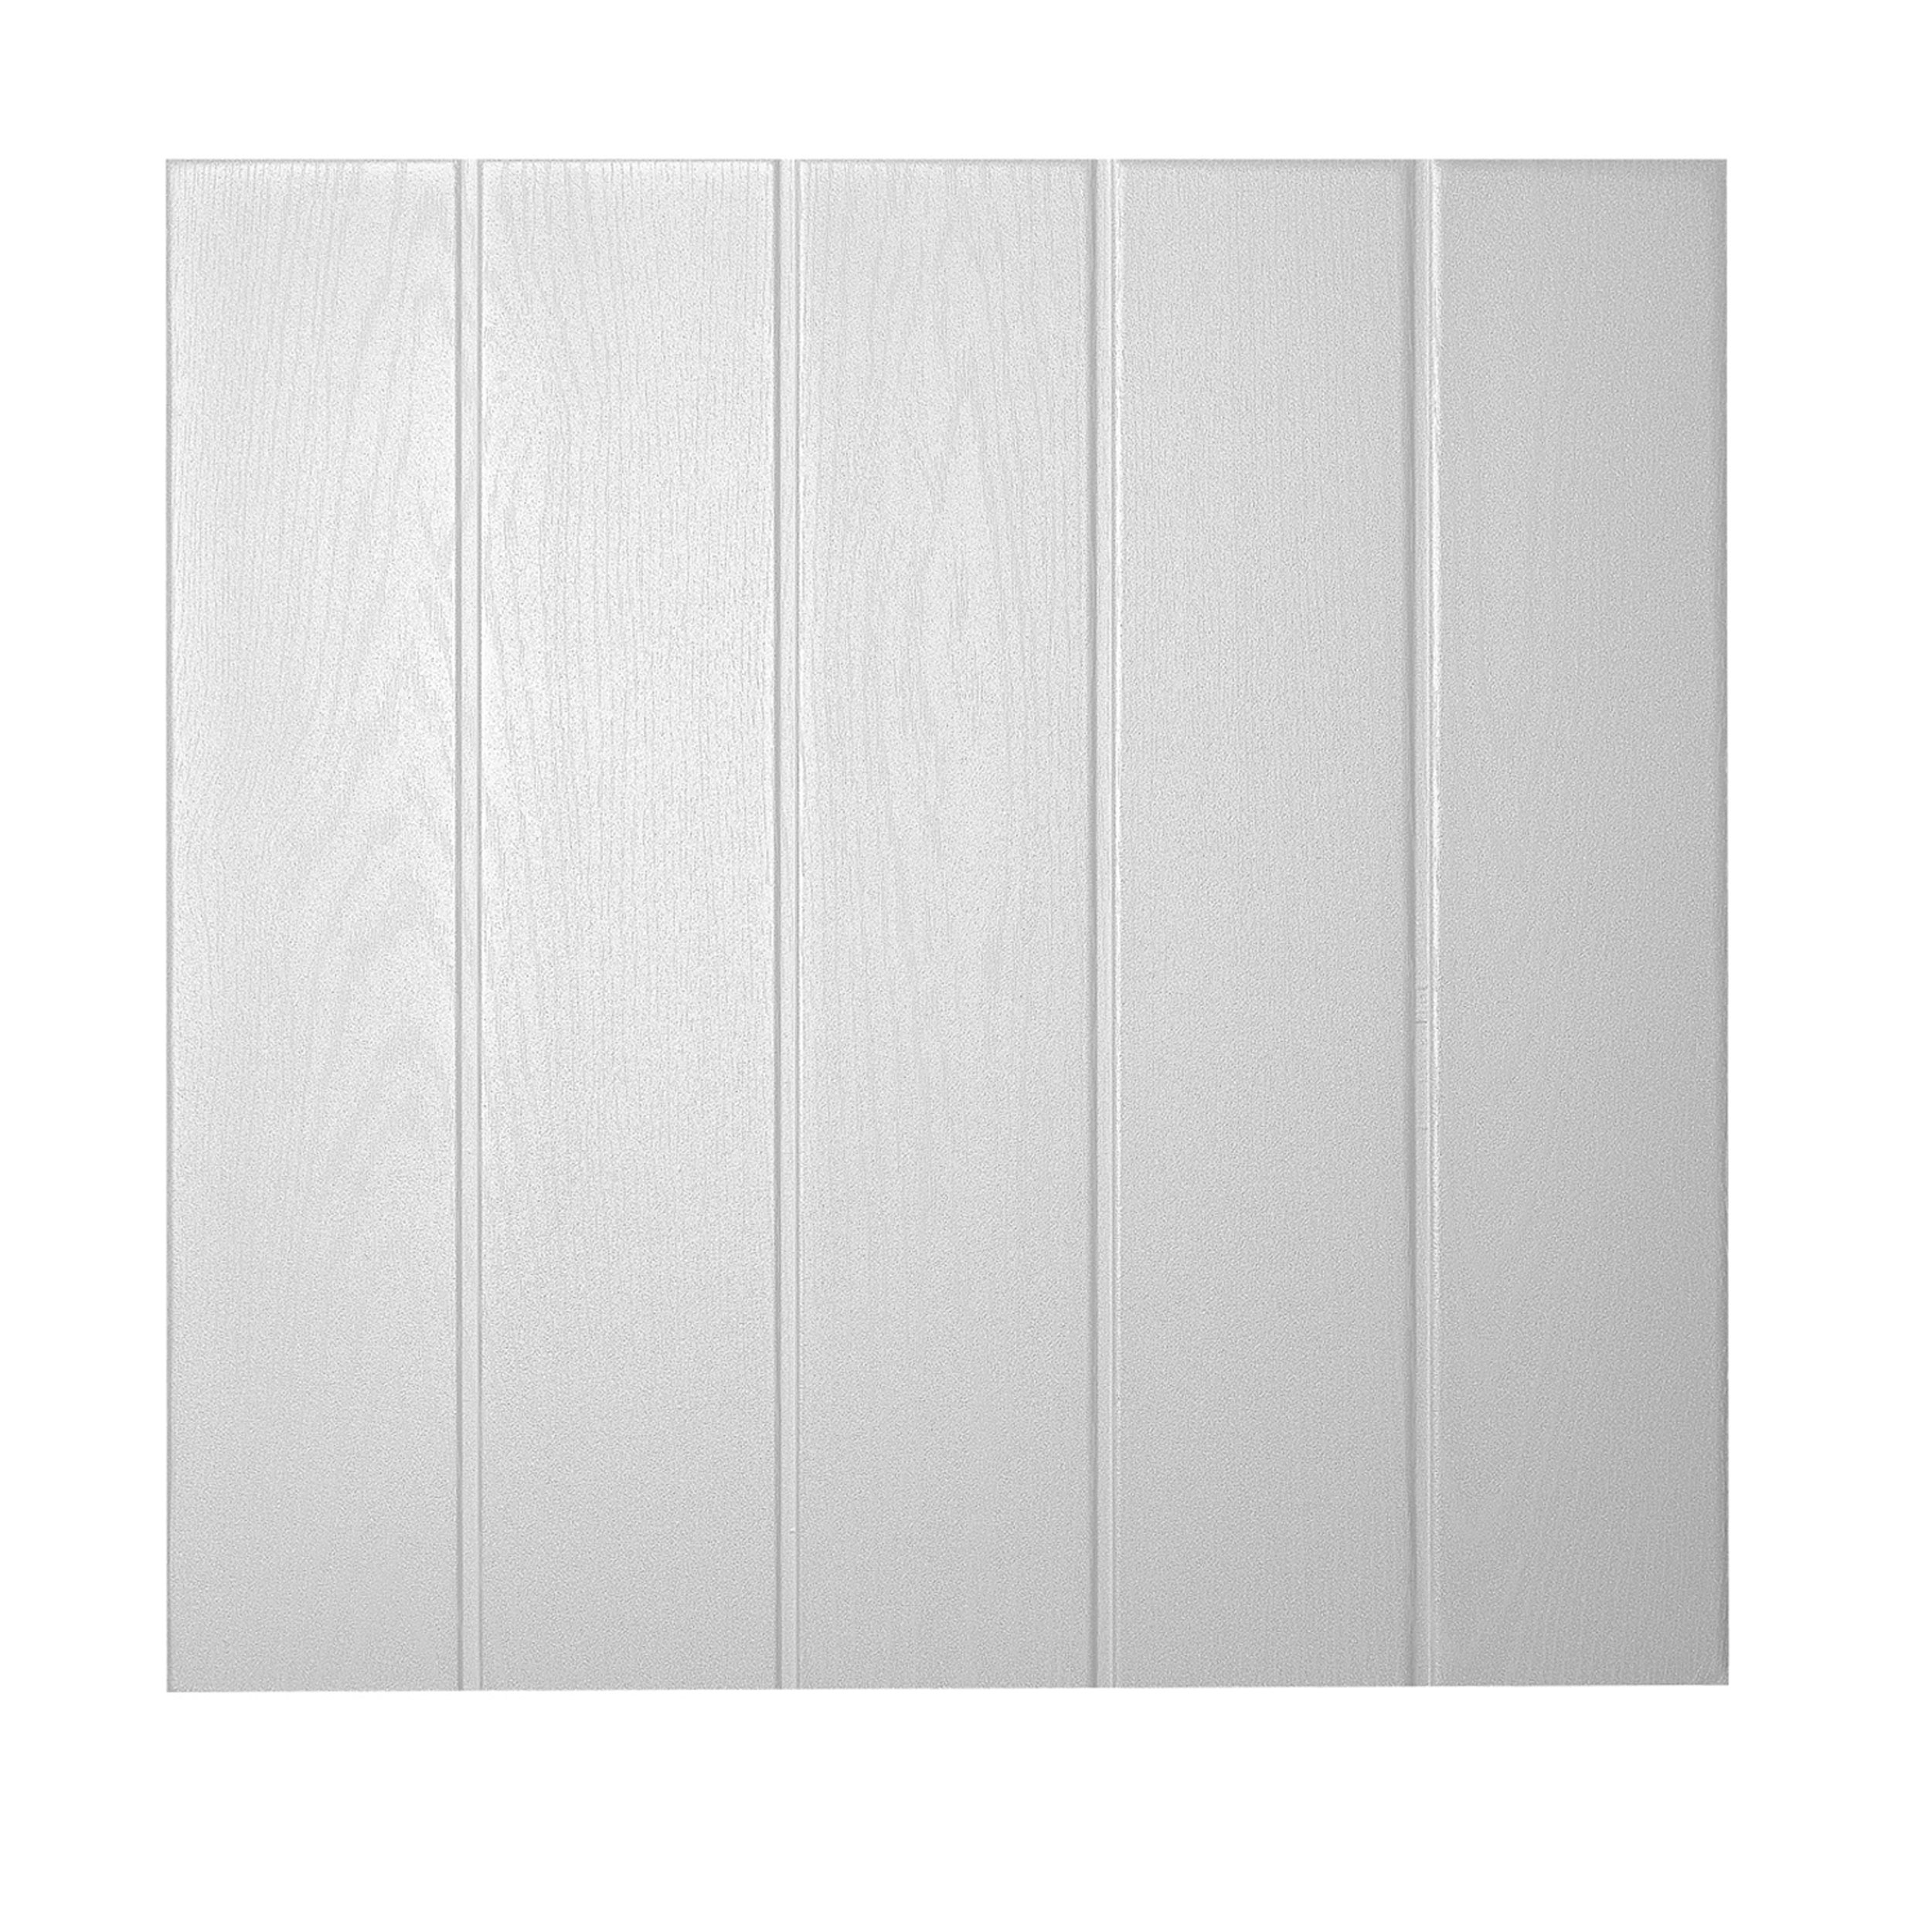 Decosa Deckenplatte Athen, weiß, 50 x 50 cm